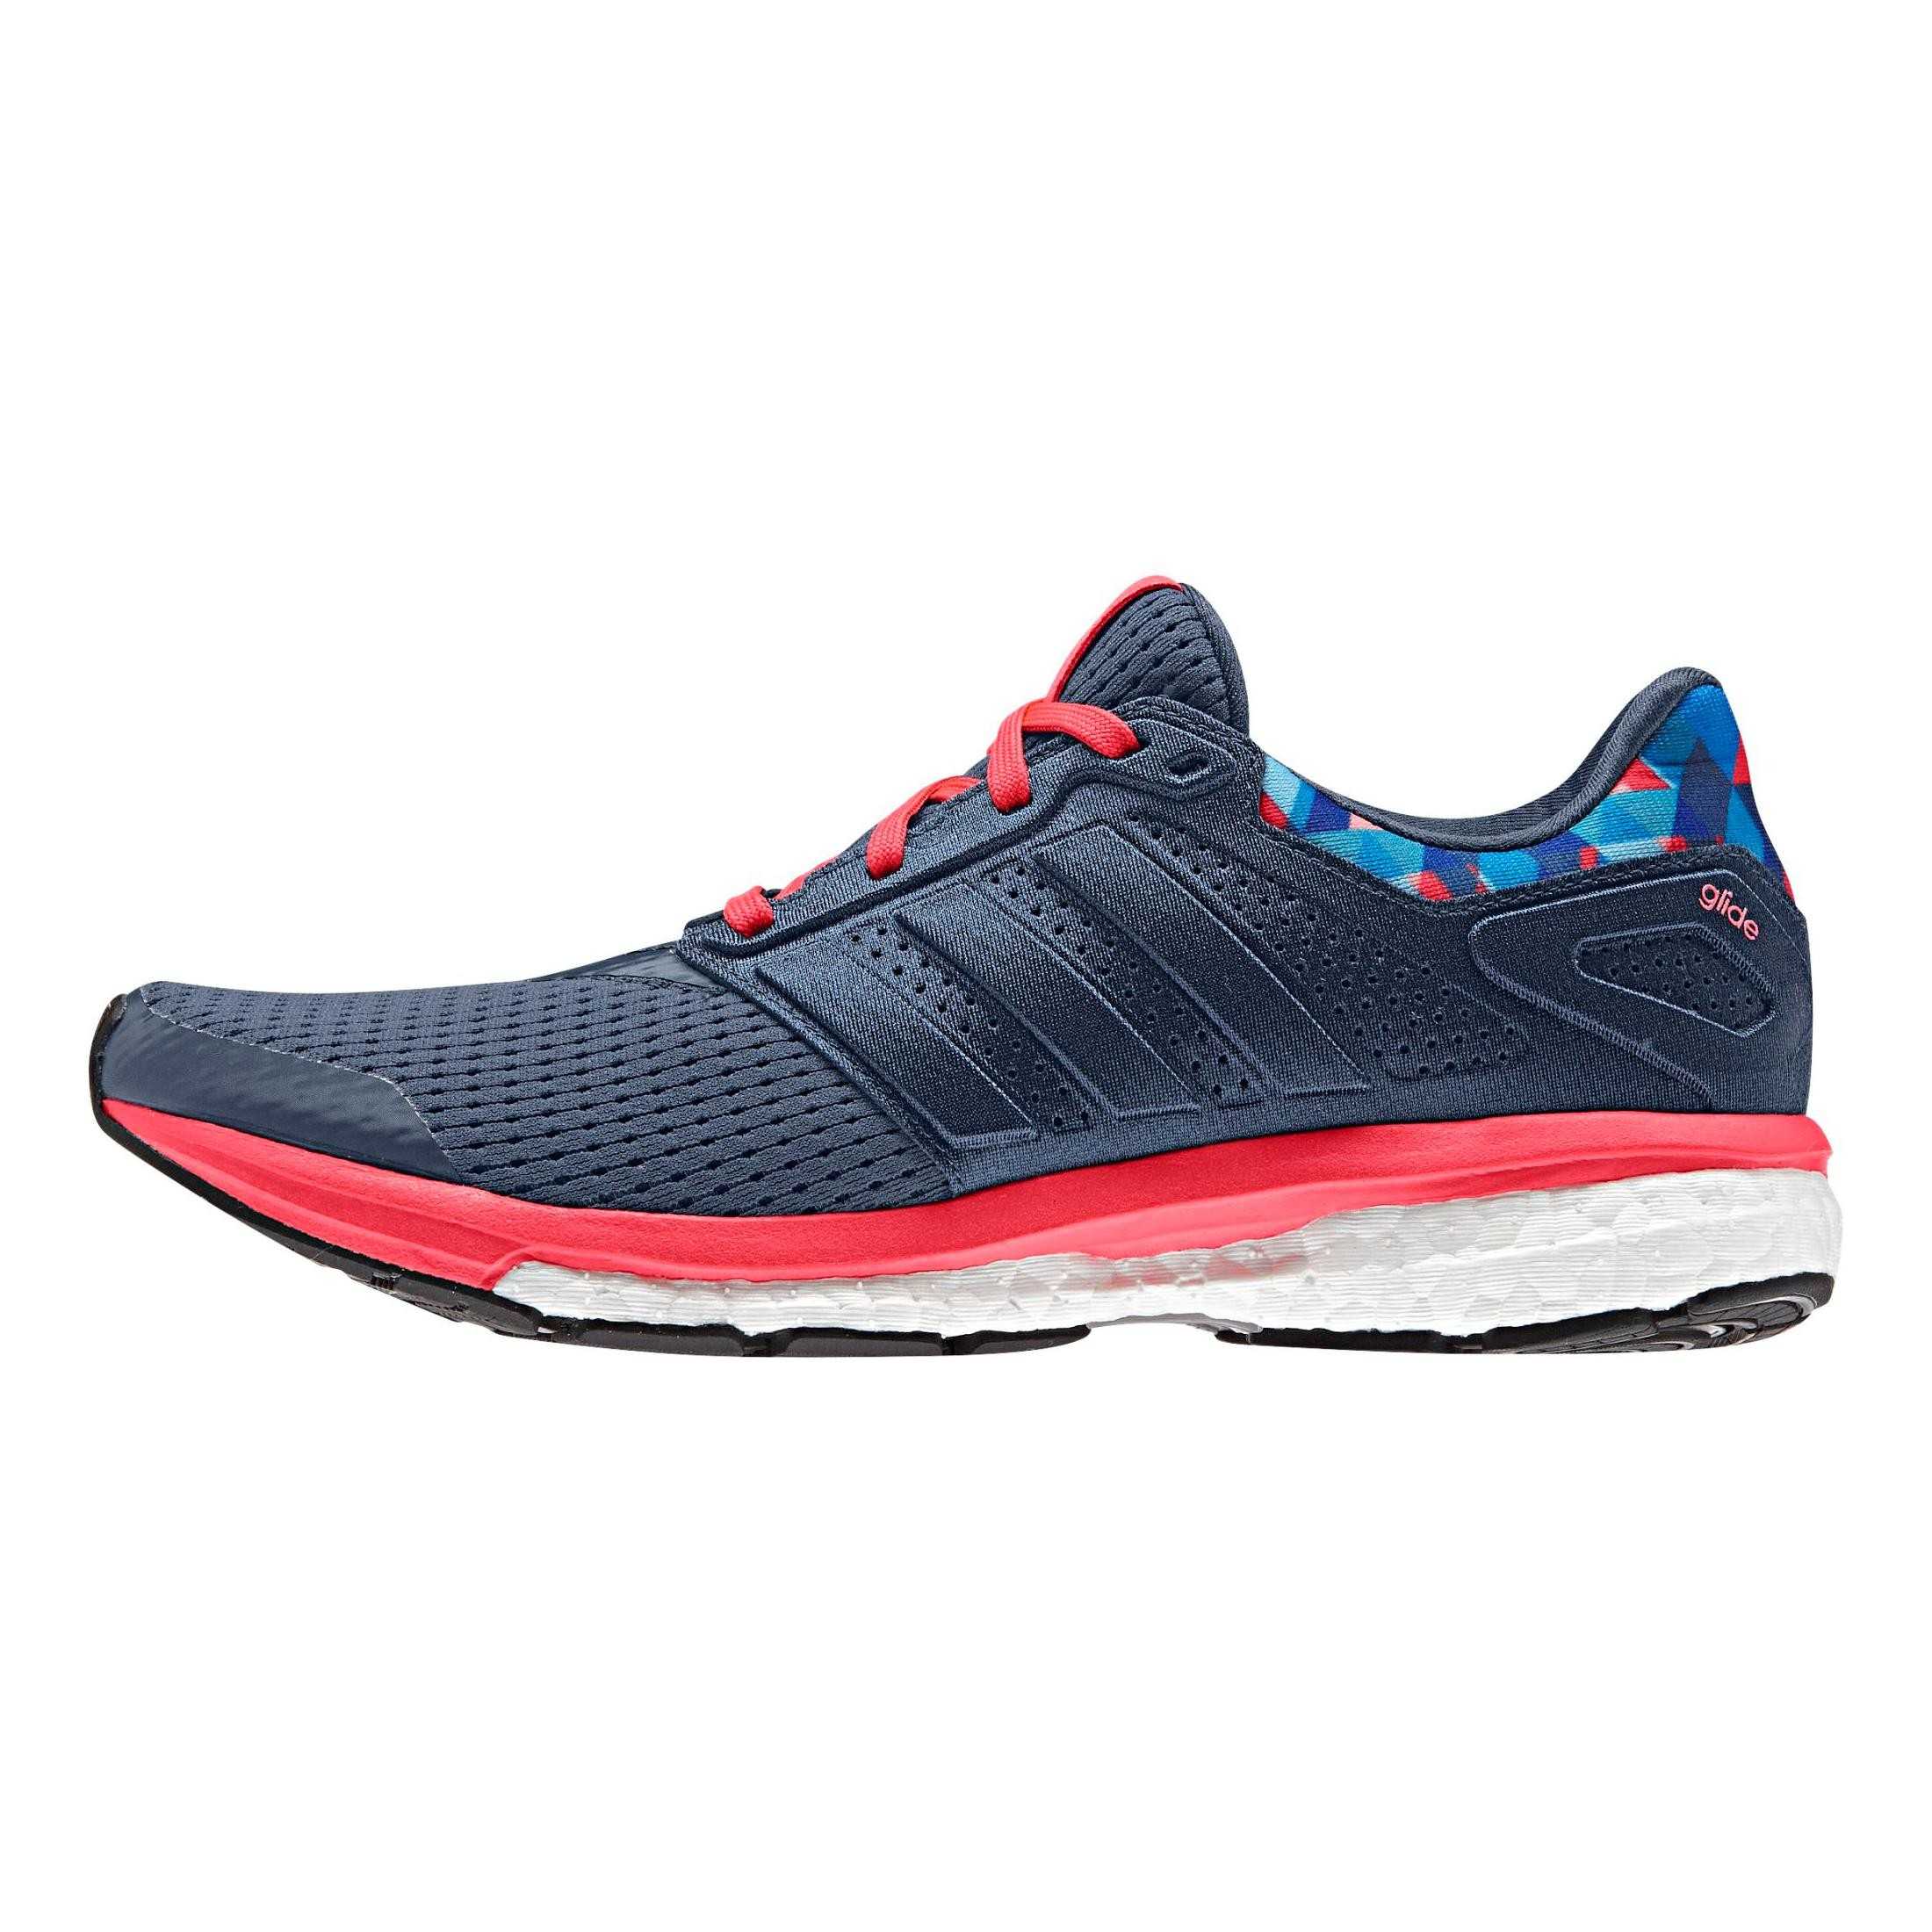 Chaussures Running - Supernova glide 8 gfx - bleu marine/rouge